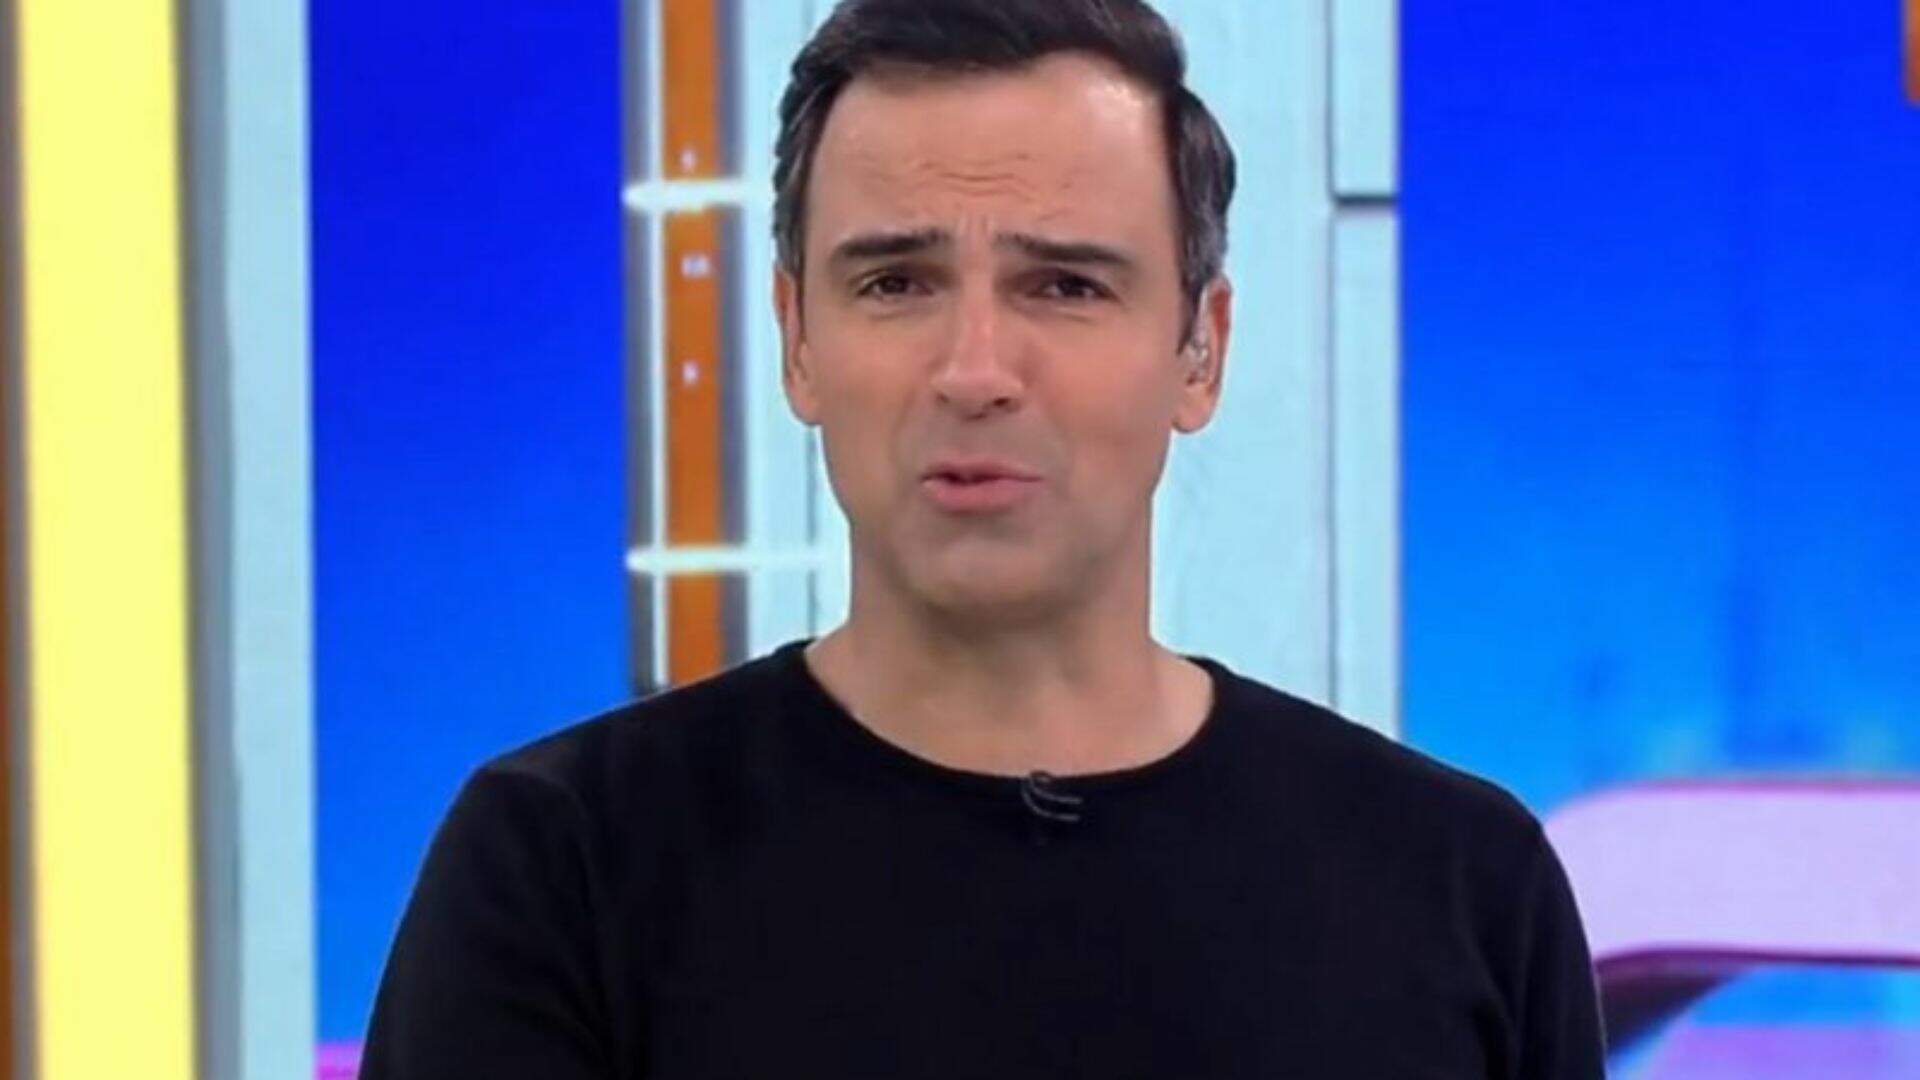 BBB: Após baixa audiência e crise nos bastidores, TV Globo toma atitude polêmica: “Questionário?” - Metropolitana FM